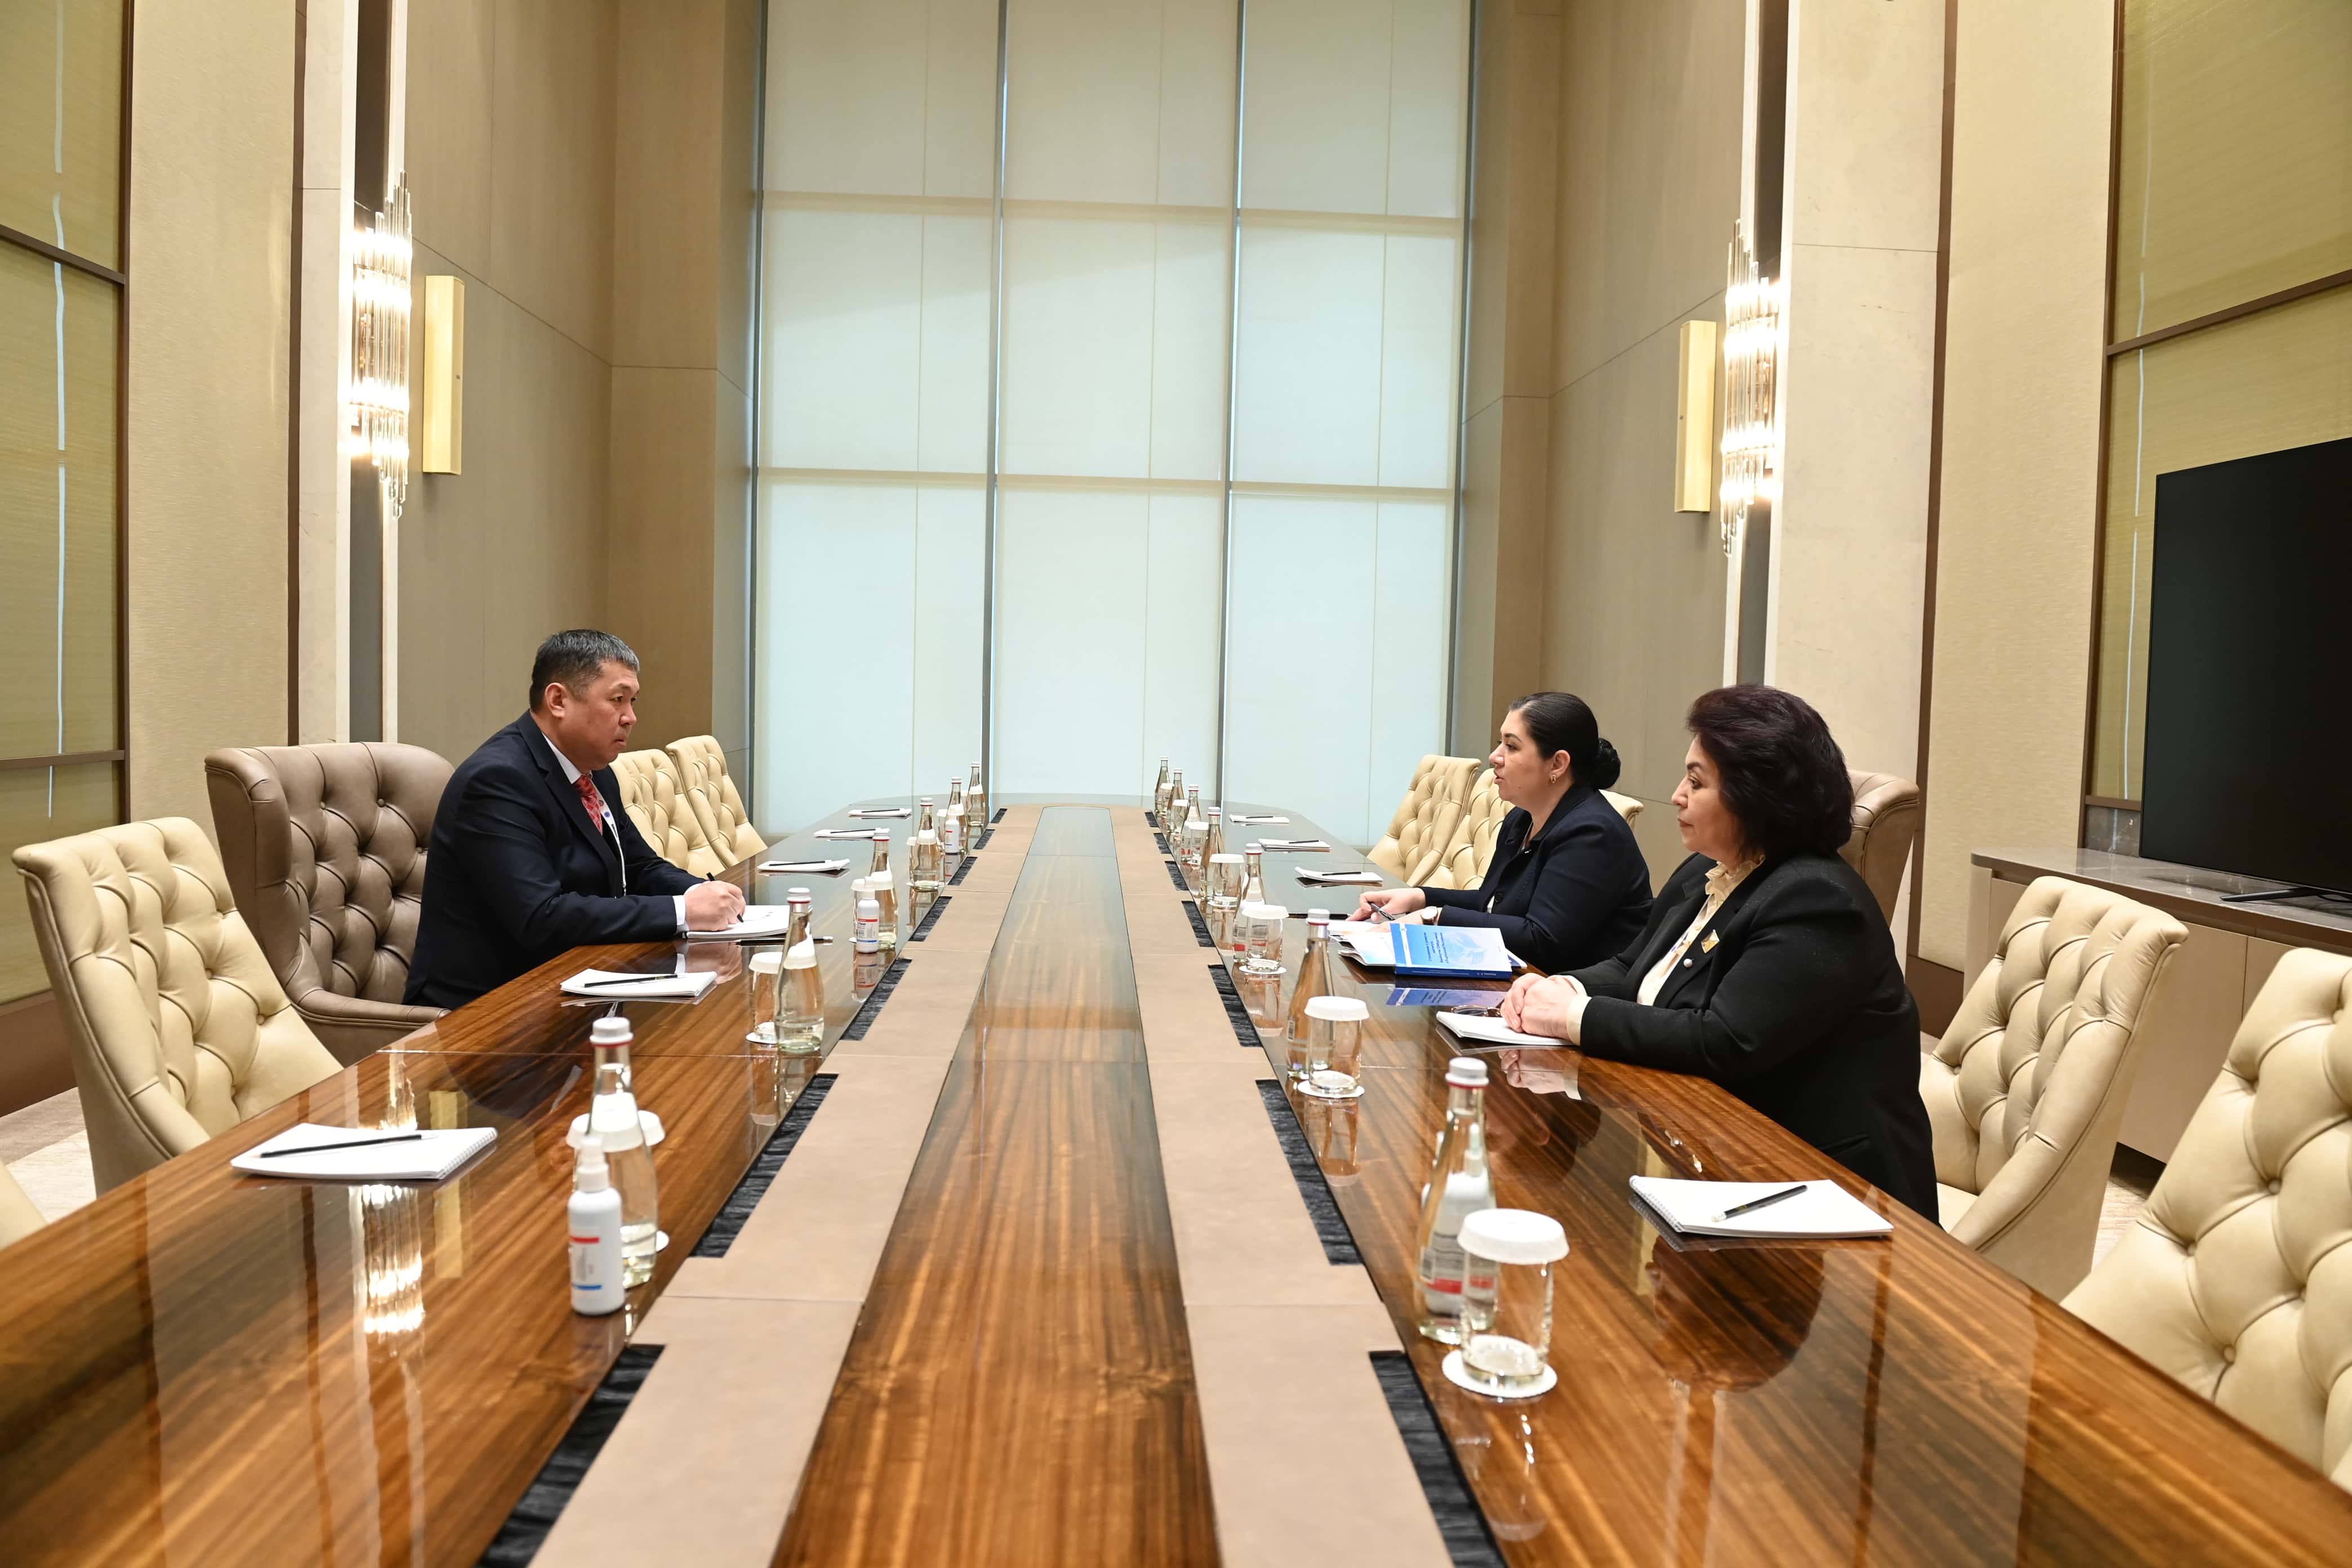 Cooperation between the Ombudsmen of Uzbekistan and Kyrgyzstan is strengthening